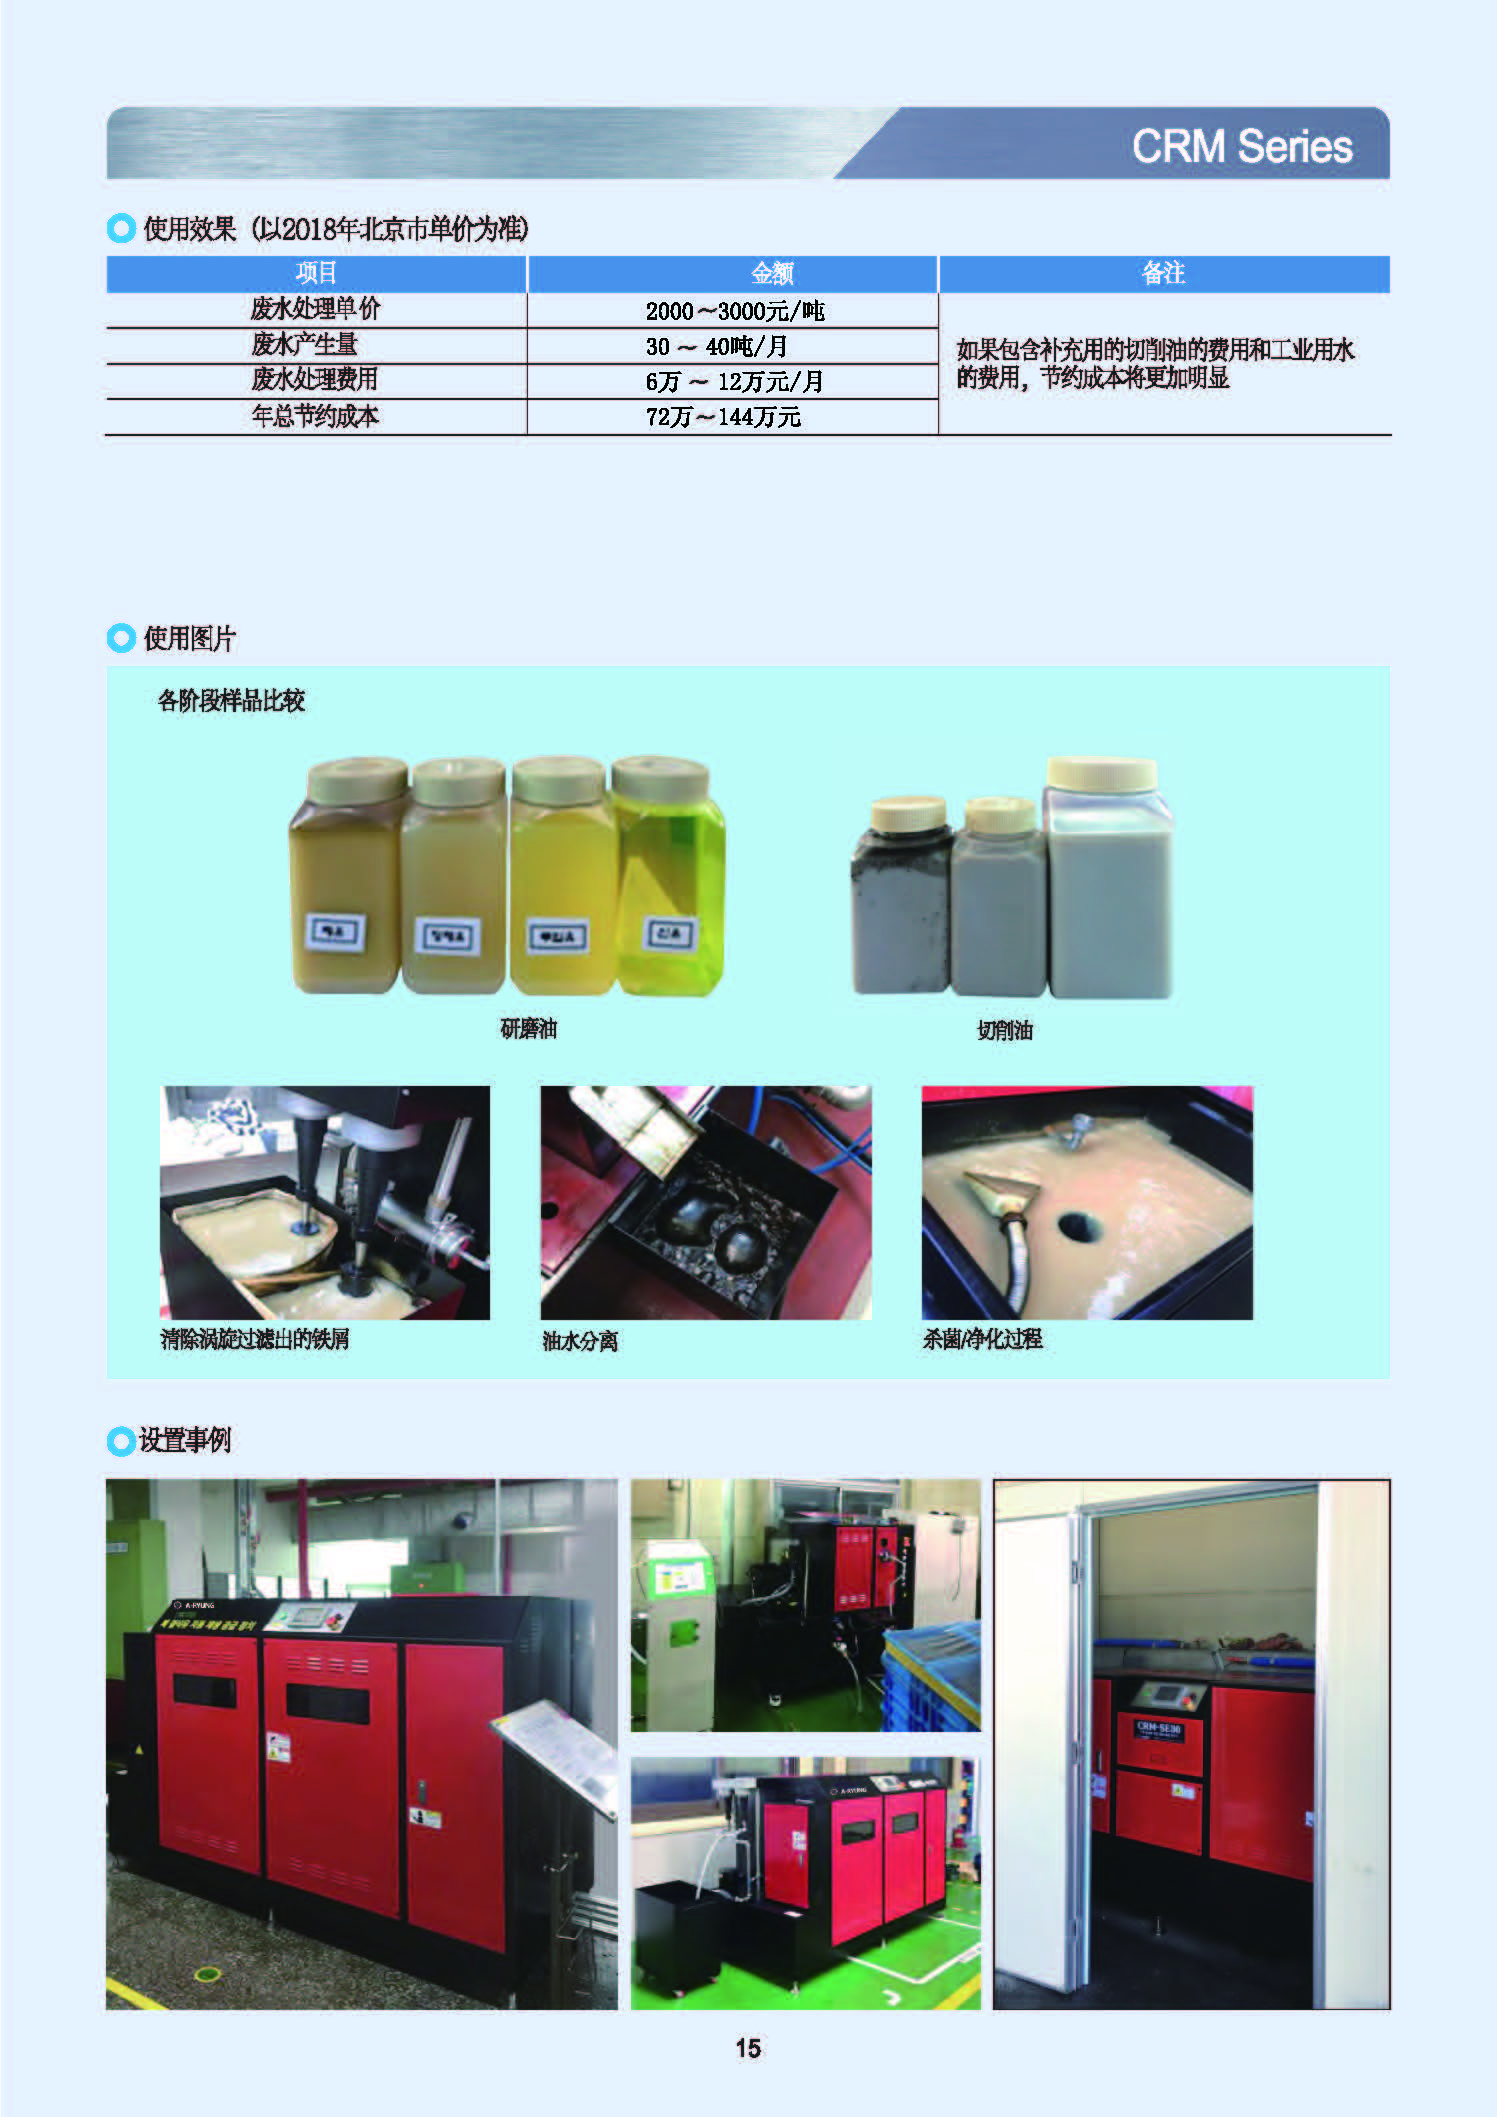 环境设备中文2018.03.17-1_页面_15